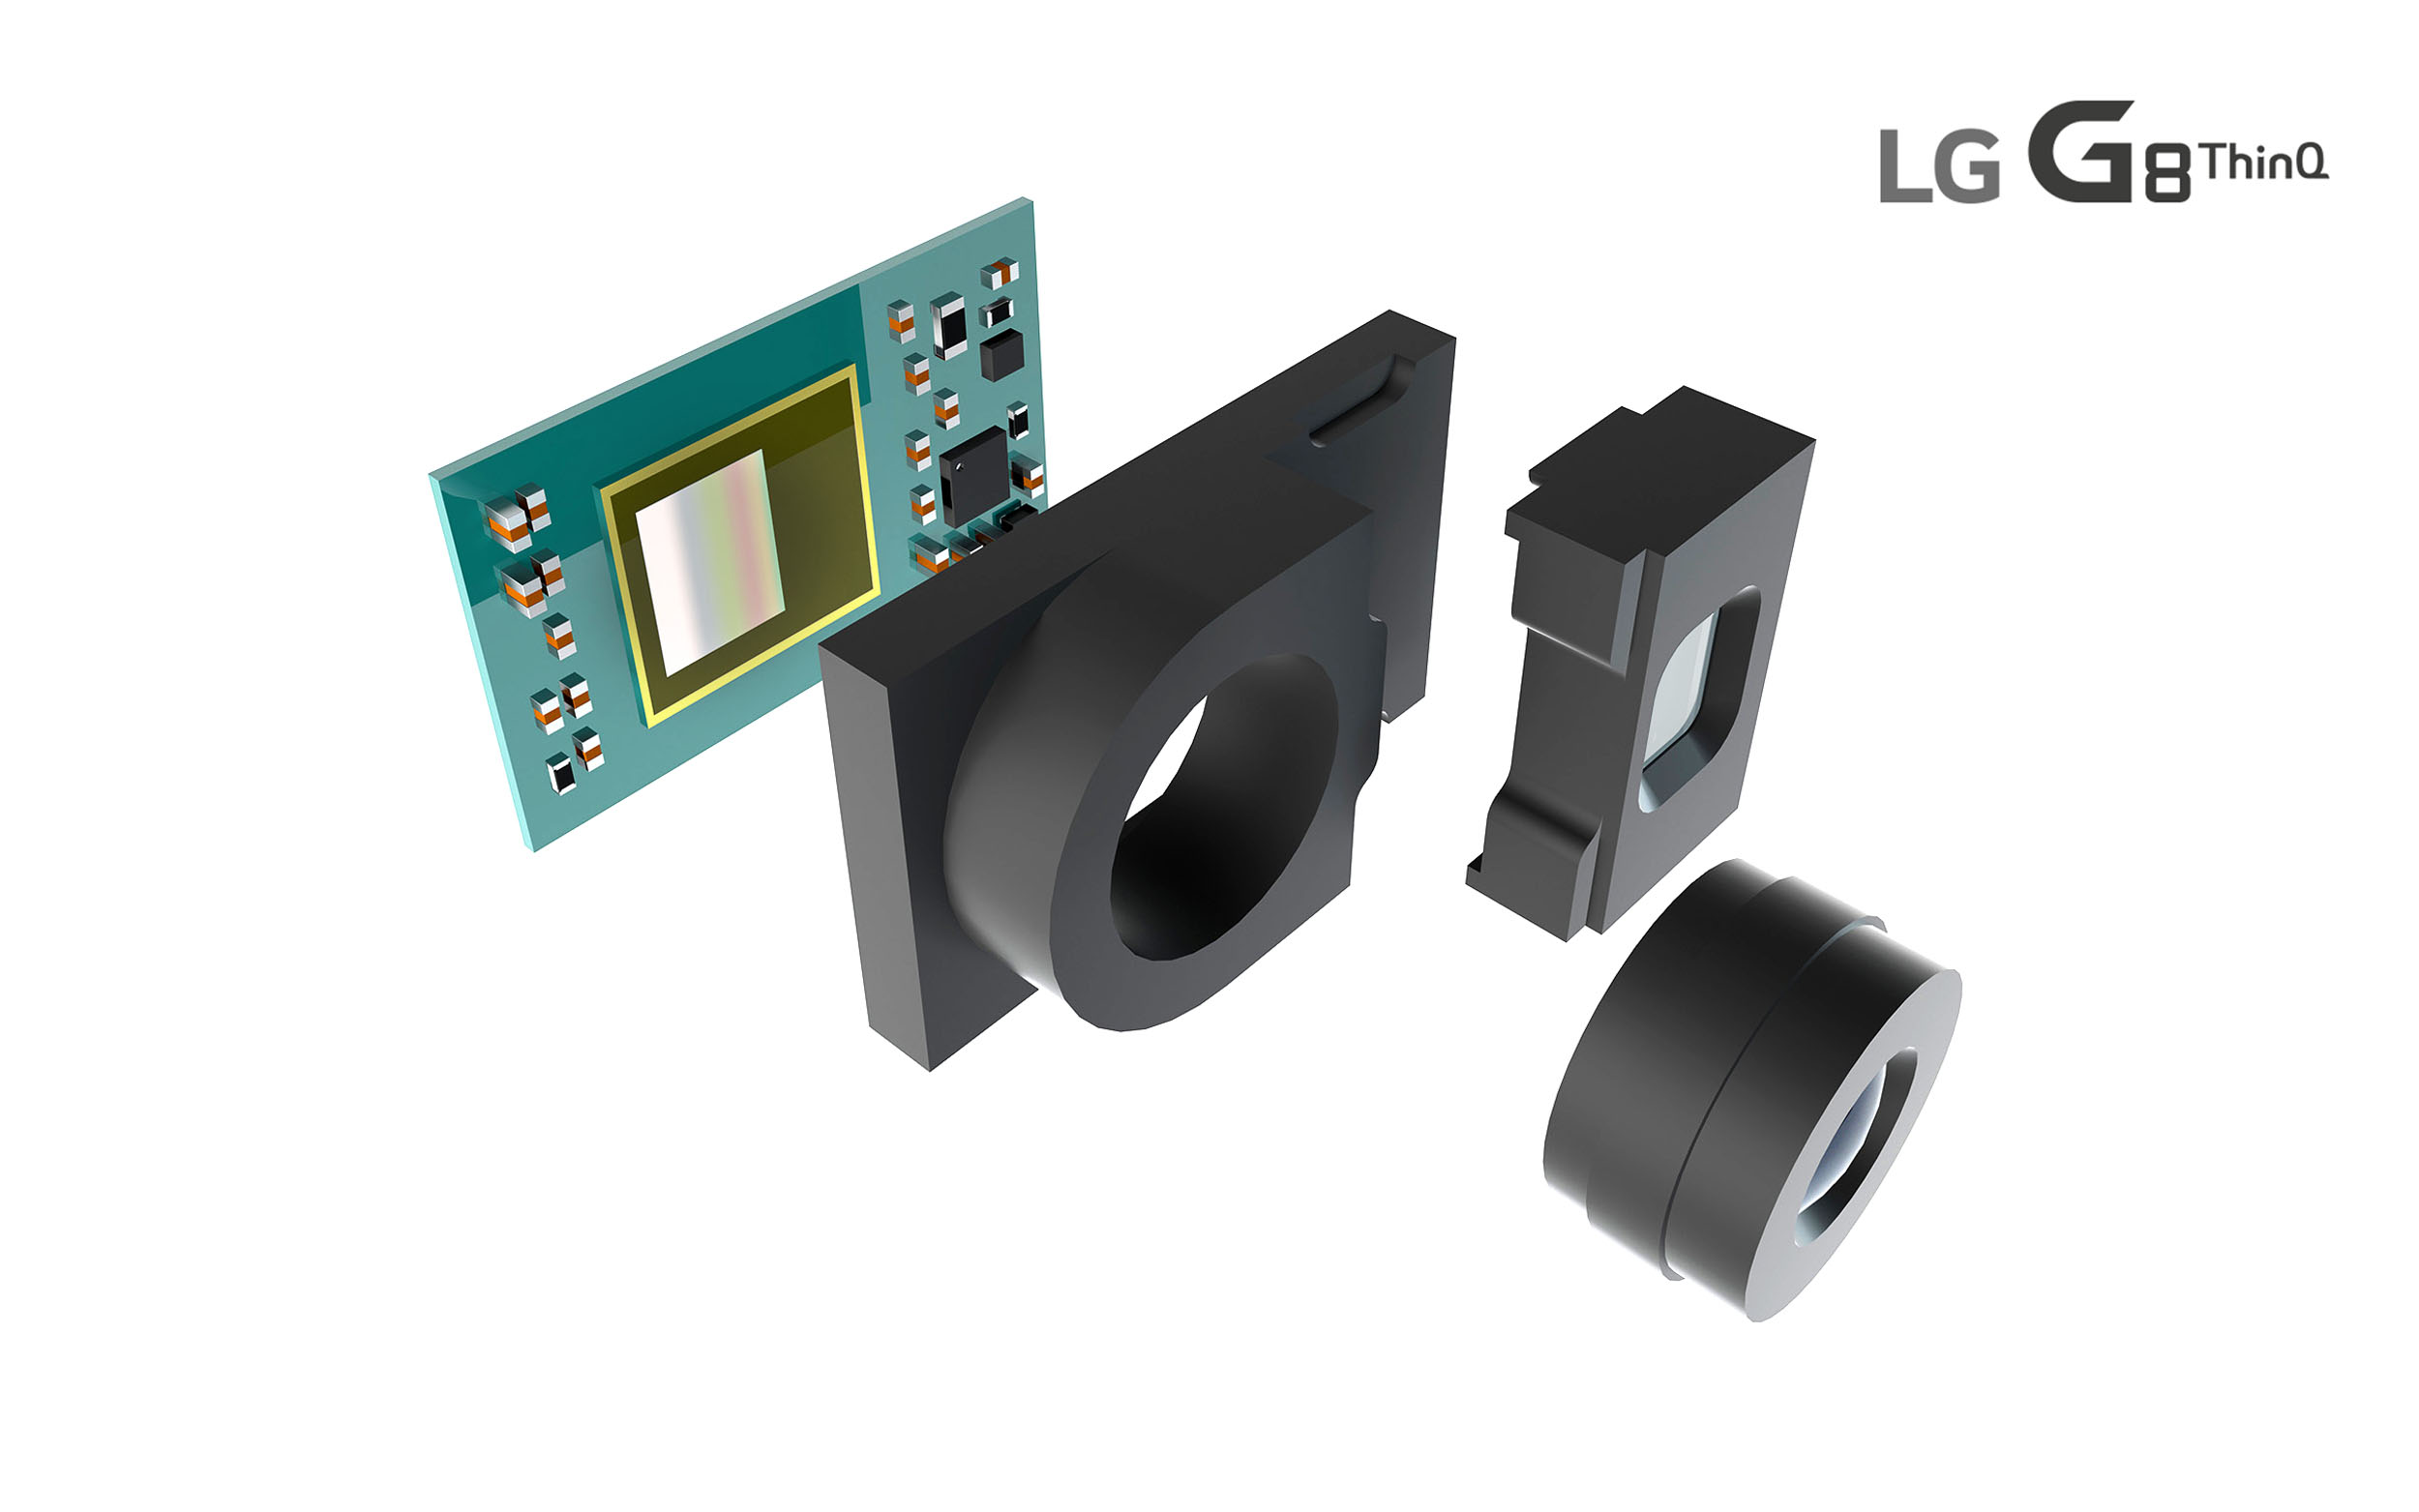 獨 반도체업체와 협업해 LG G8 <sup>ThinQ</sup>에 최첨단 3D센서 탑재한다